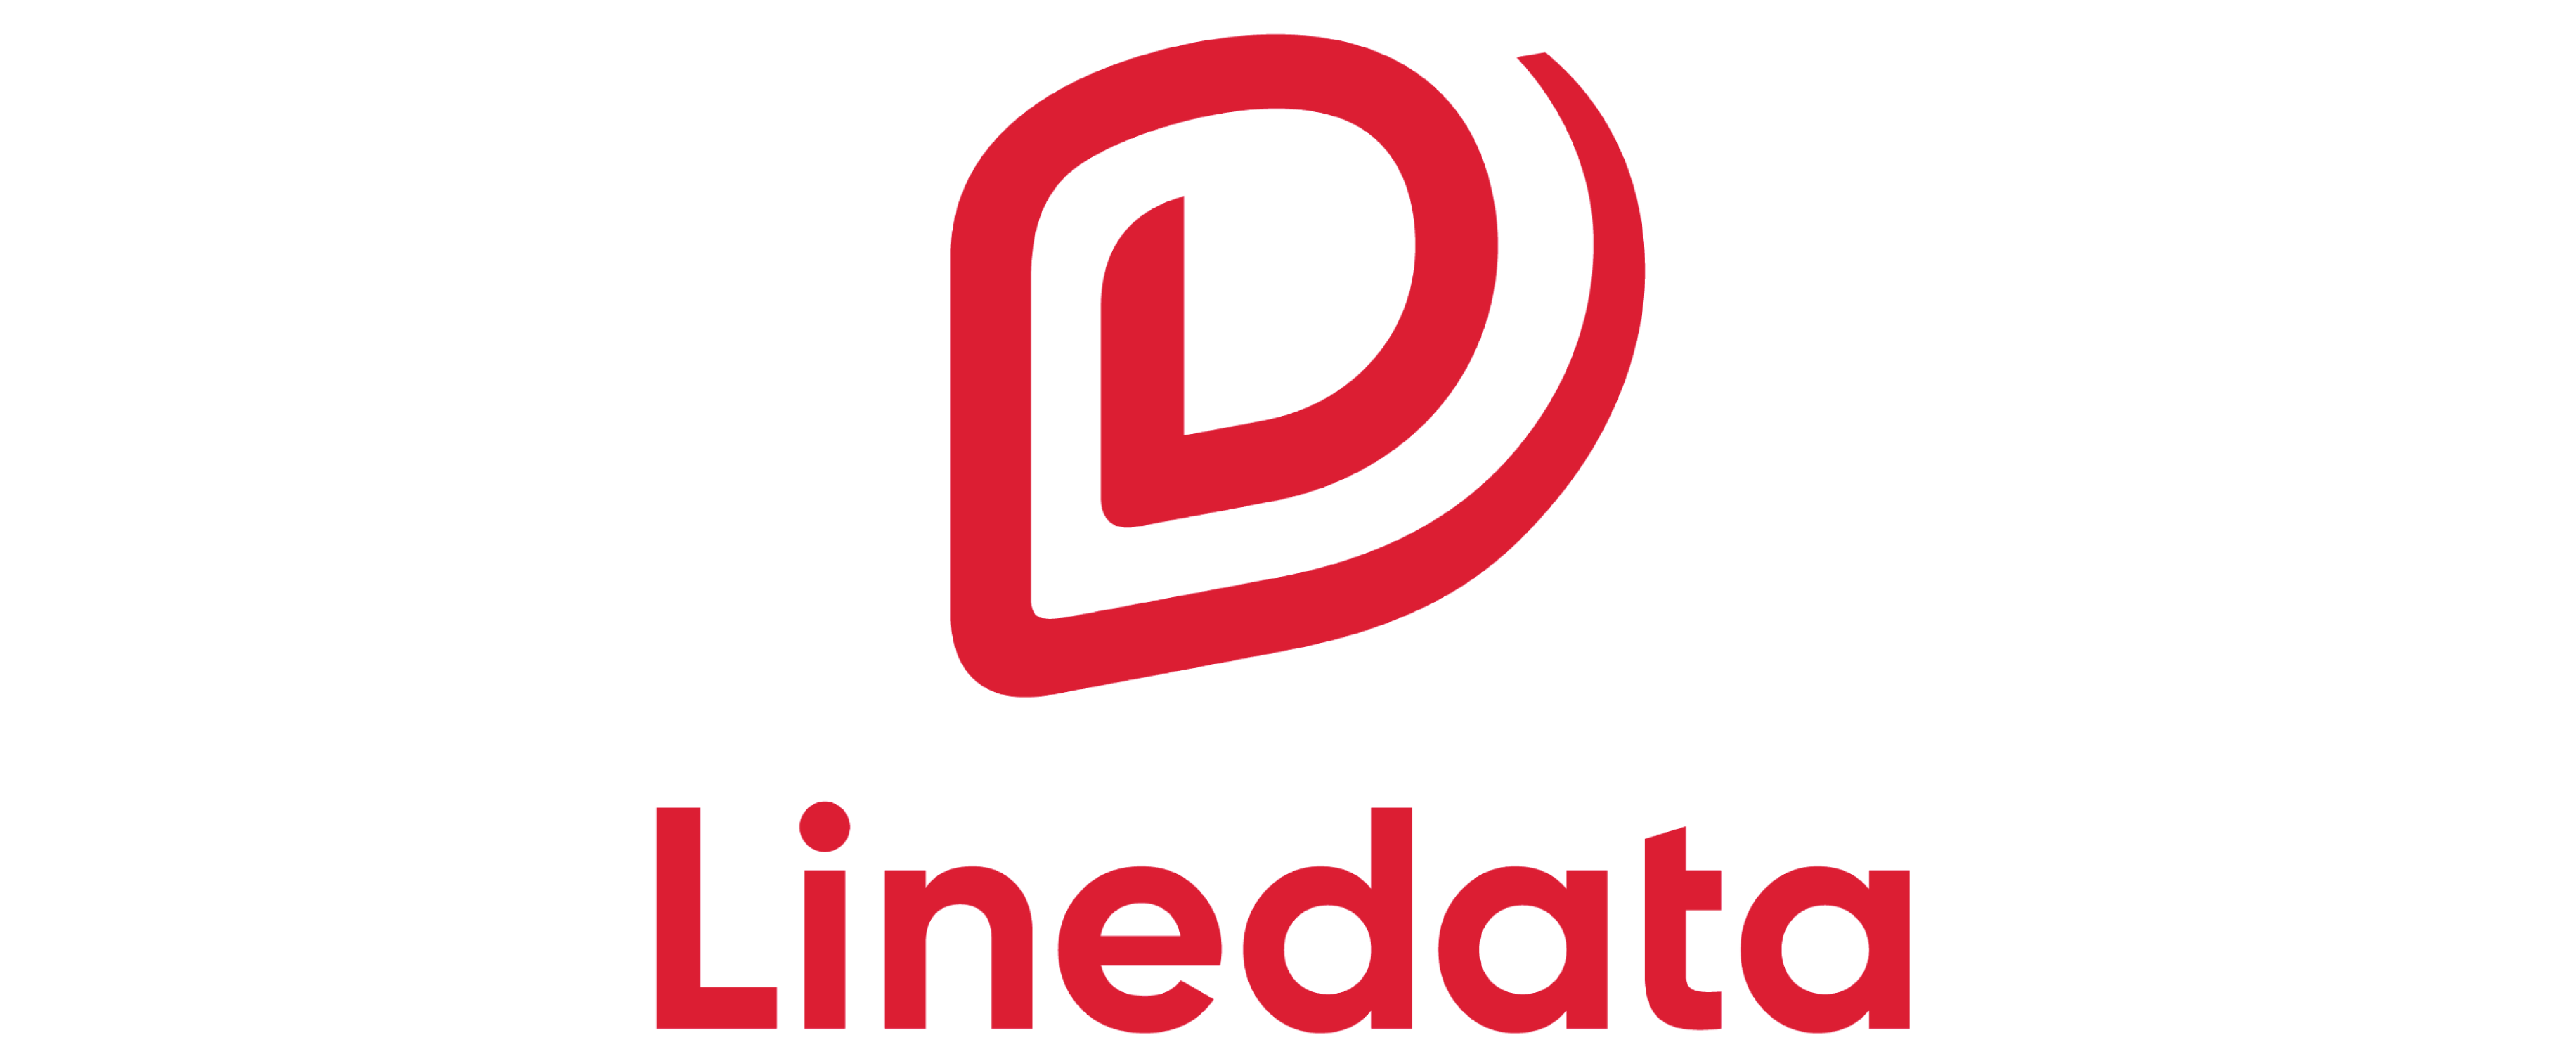 Linedata logo